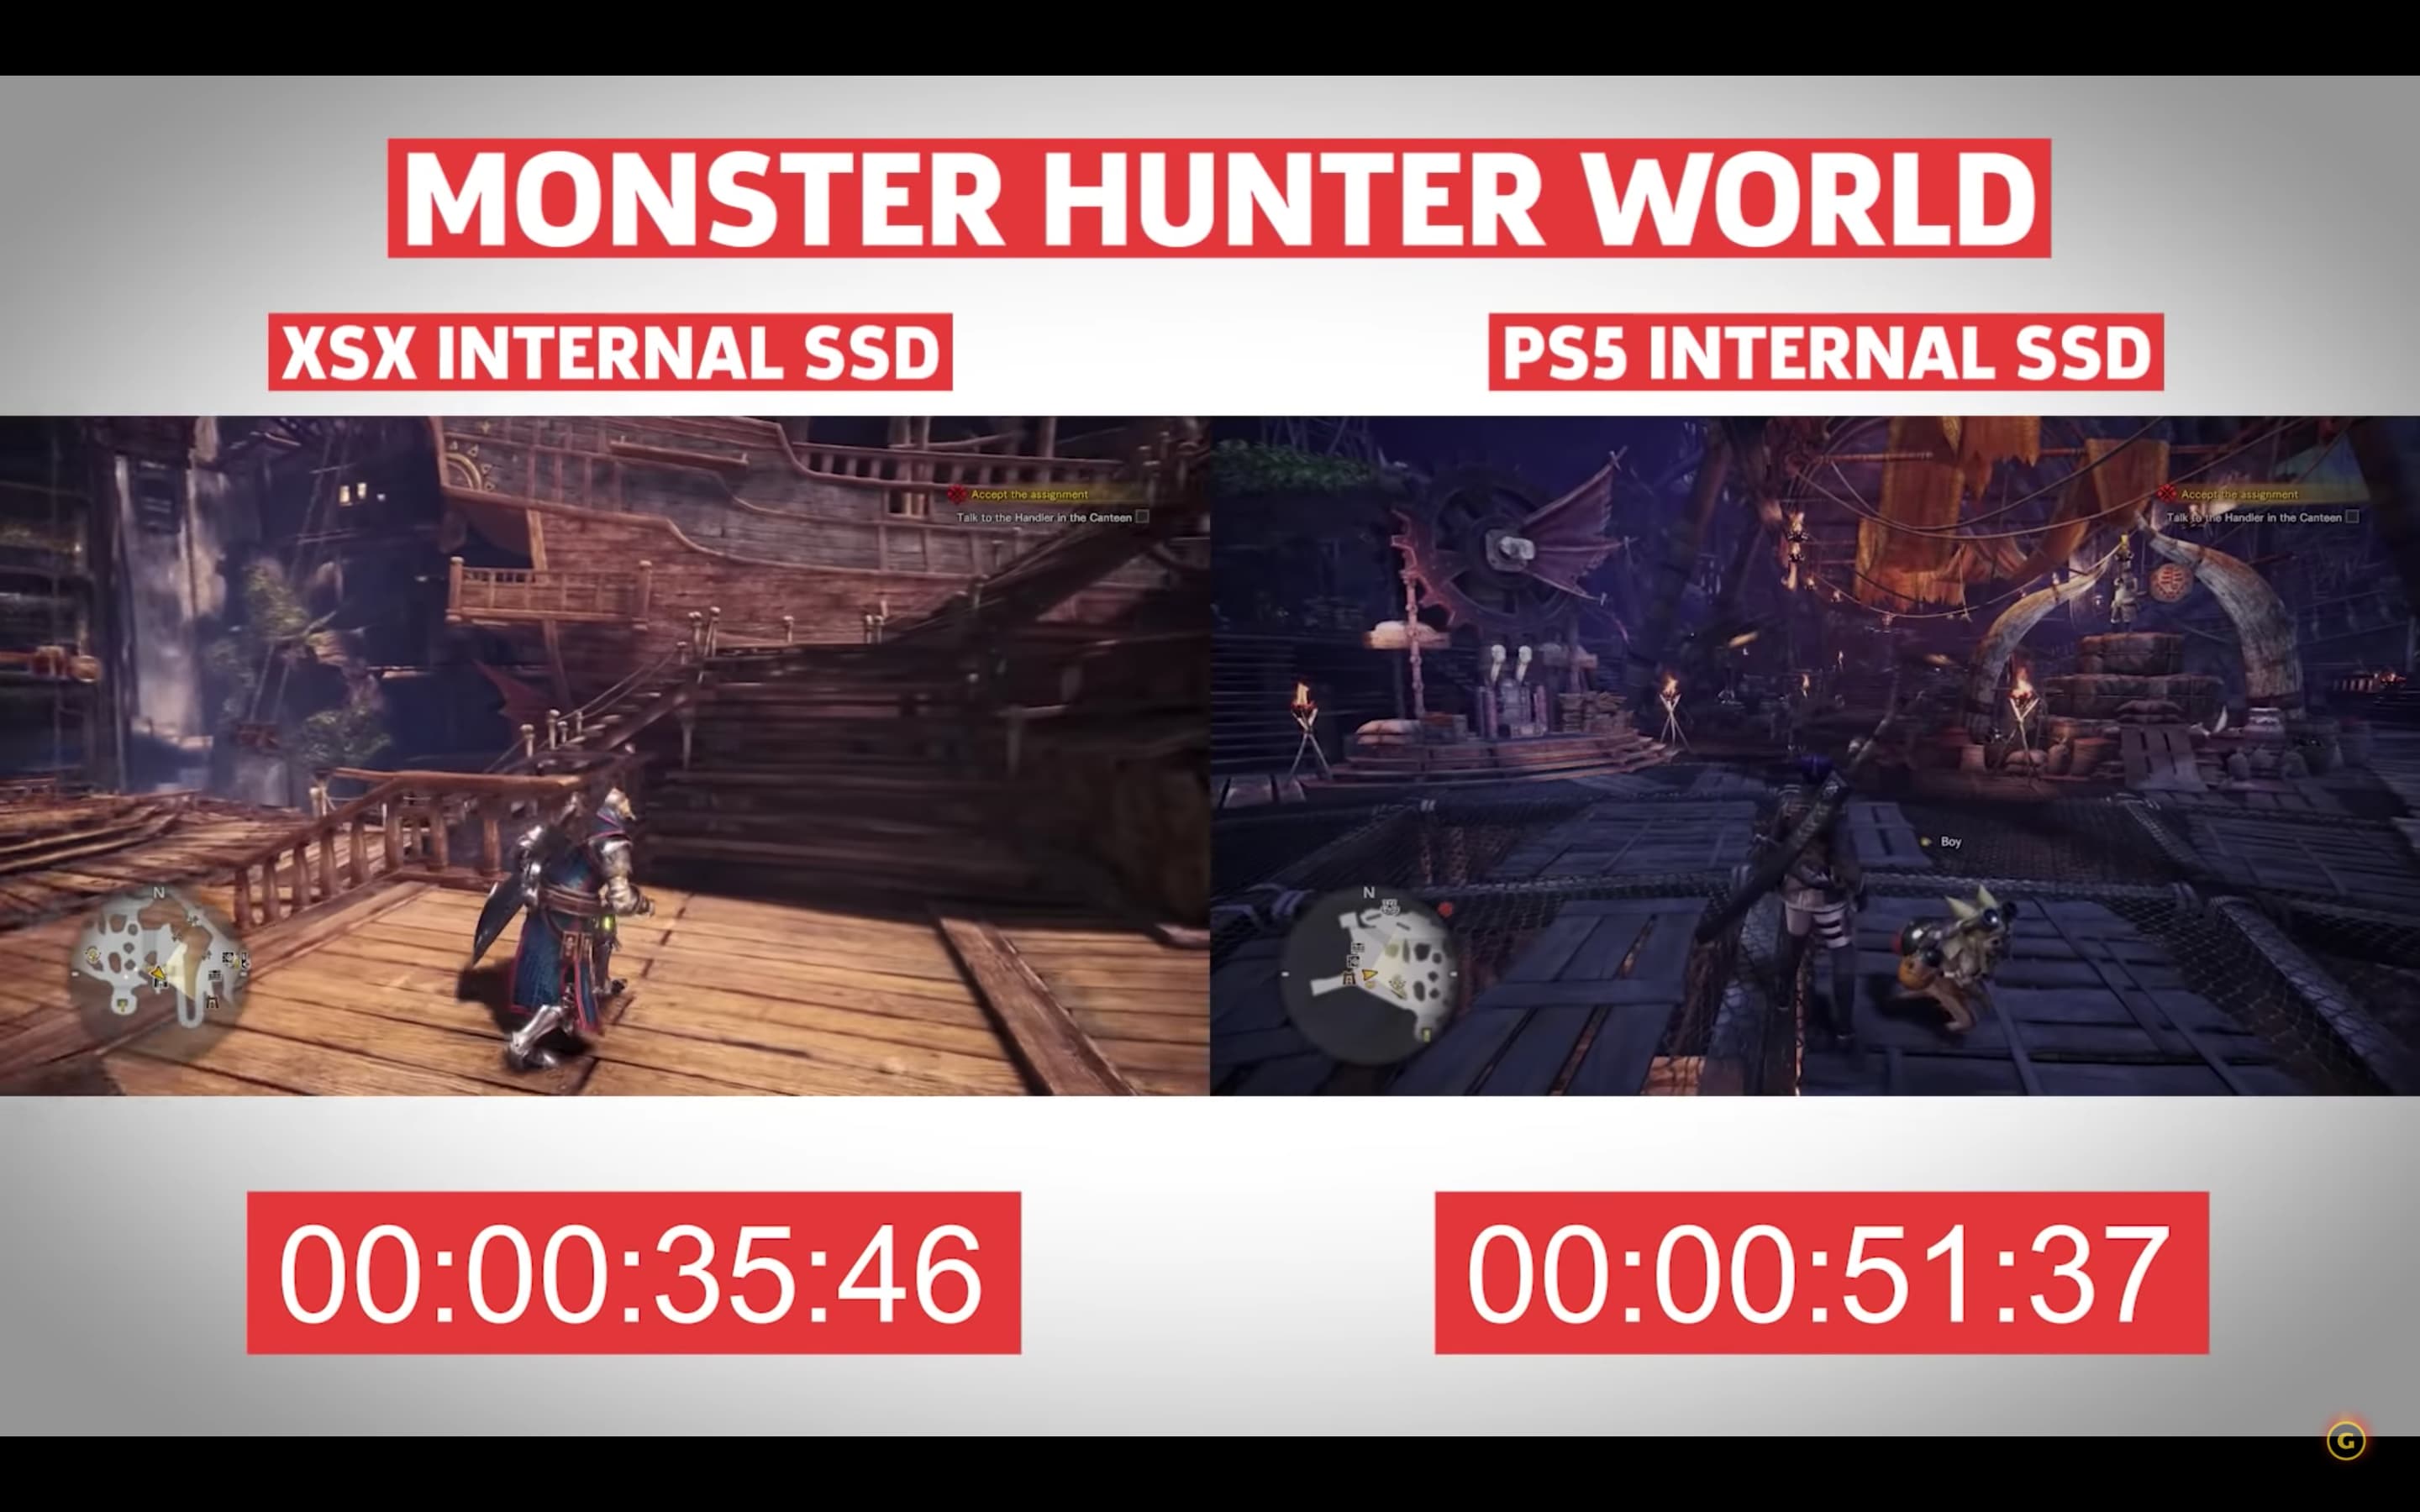 《怪物猎人世界》 PS5 读取速度比 XBX 慢